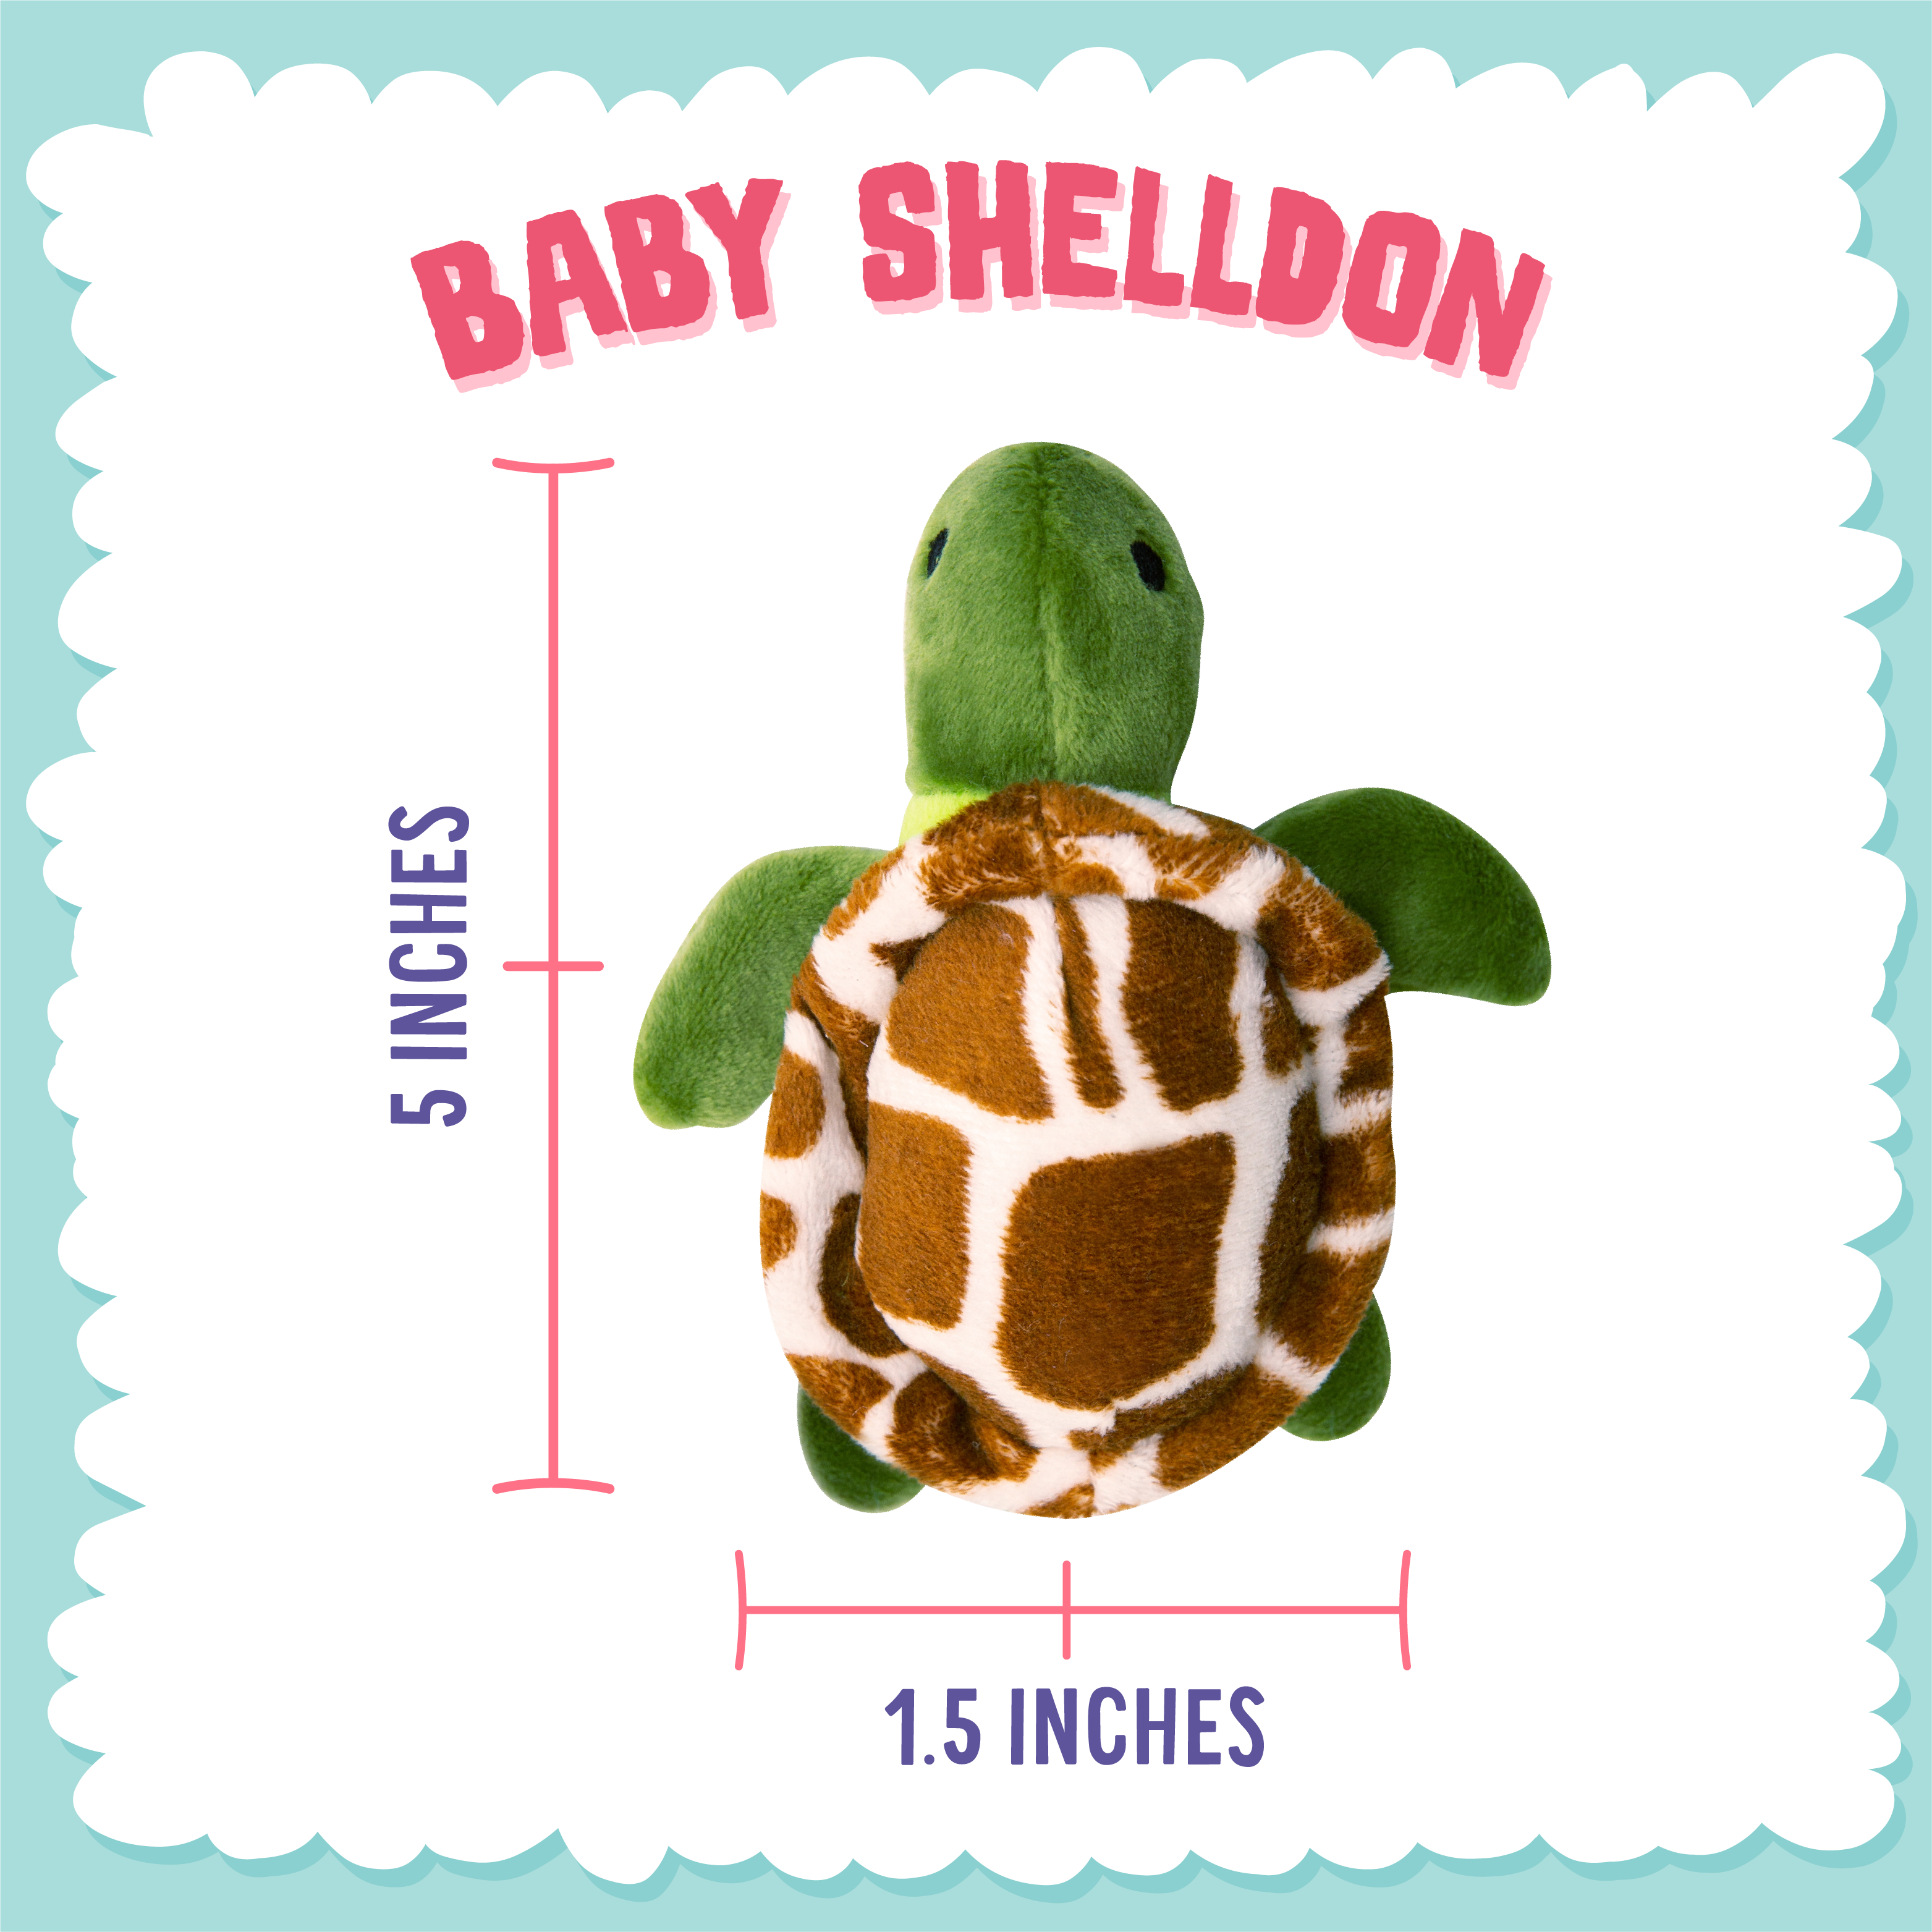 Baby Shelldon